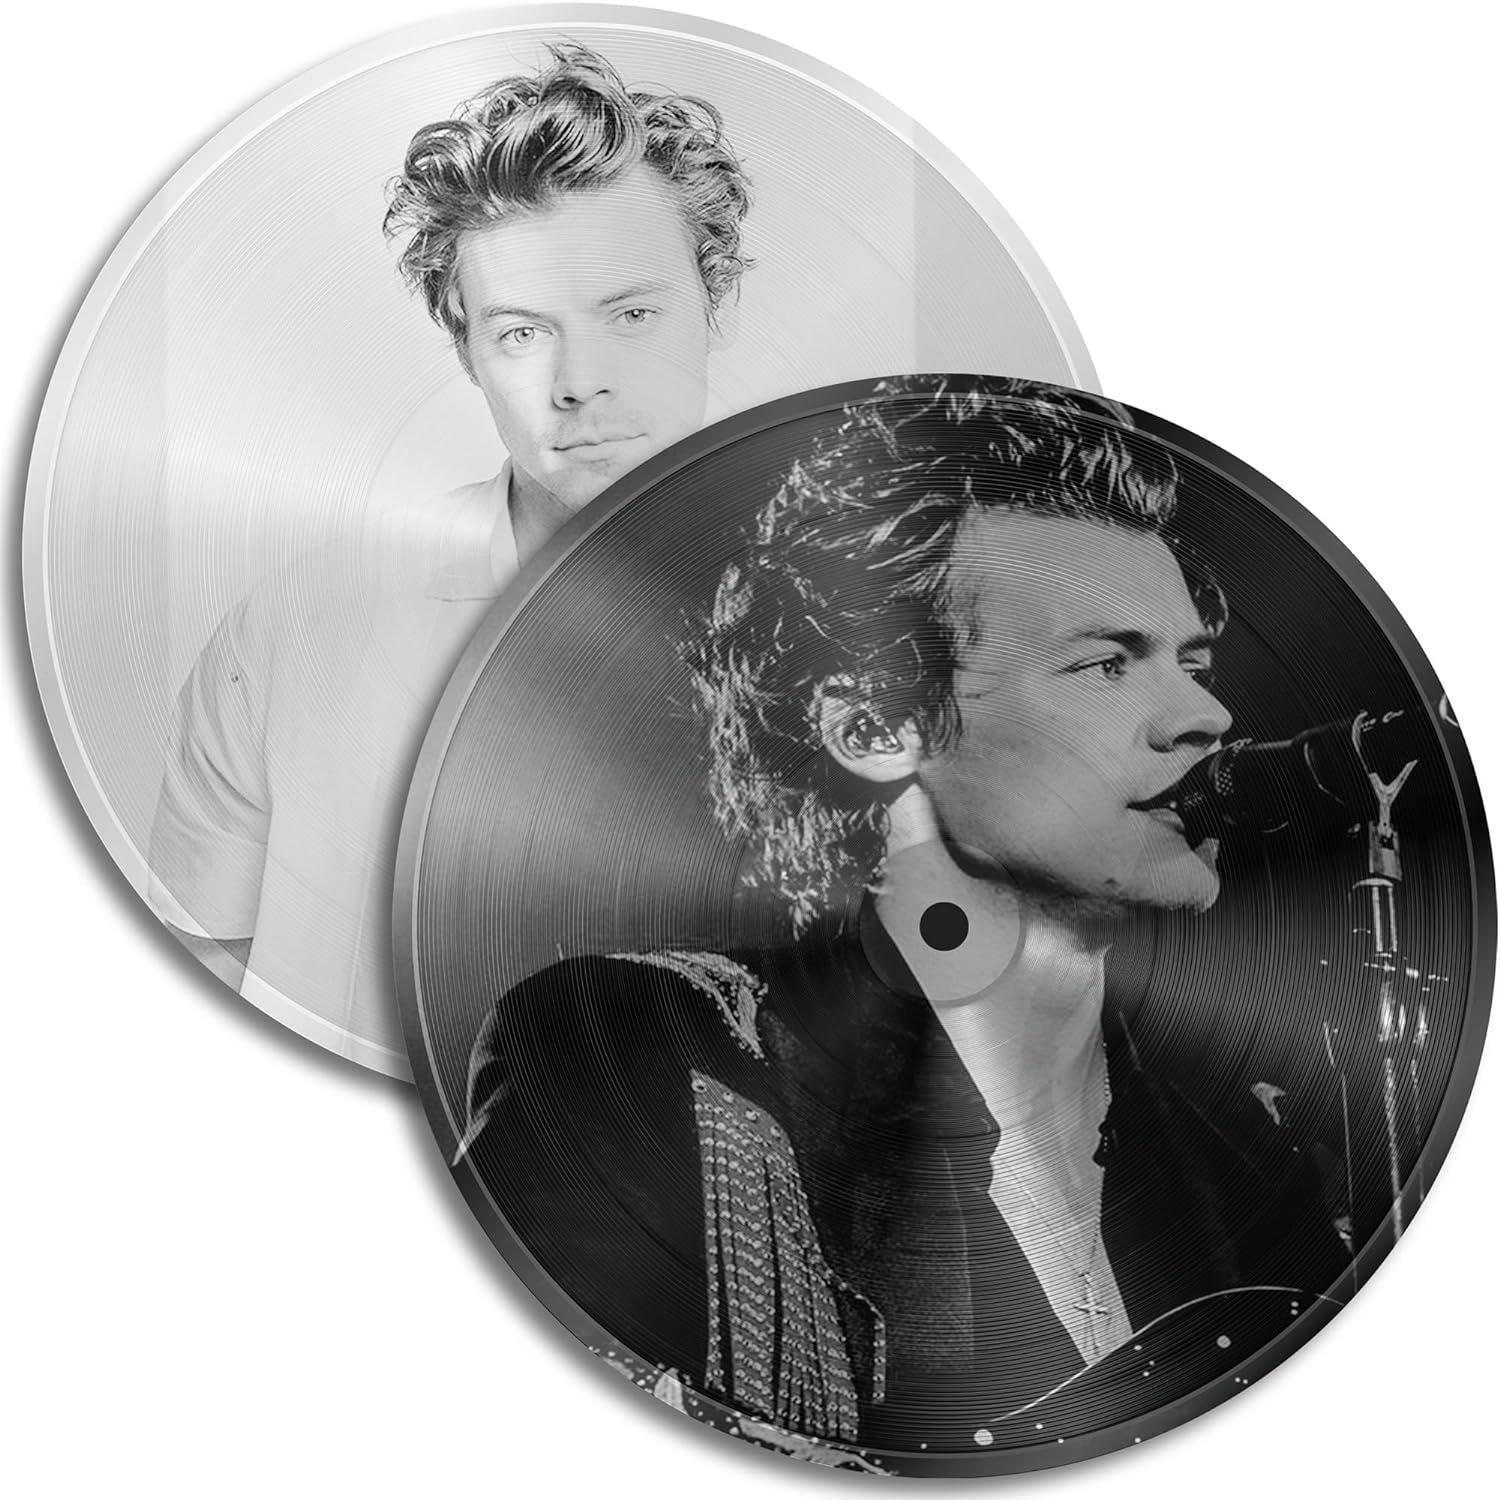 To vinyler med Harry Styles' ansigt trykt på